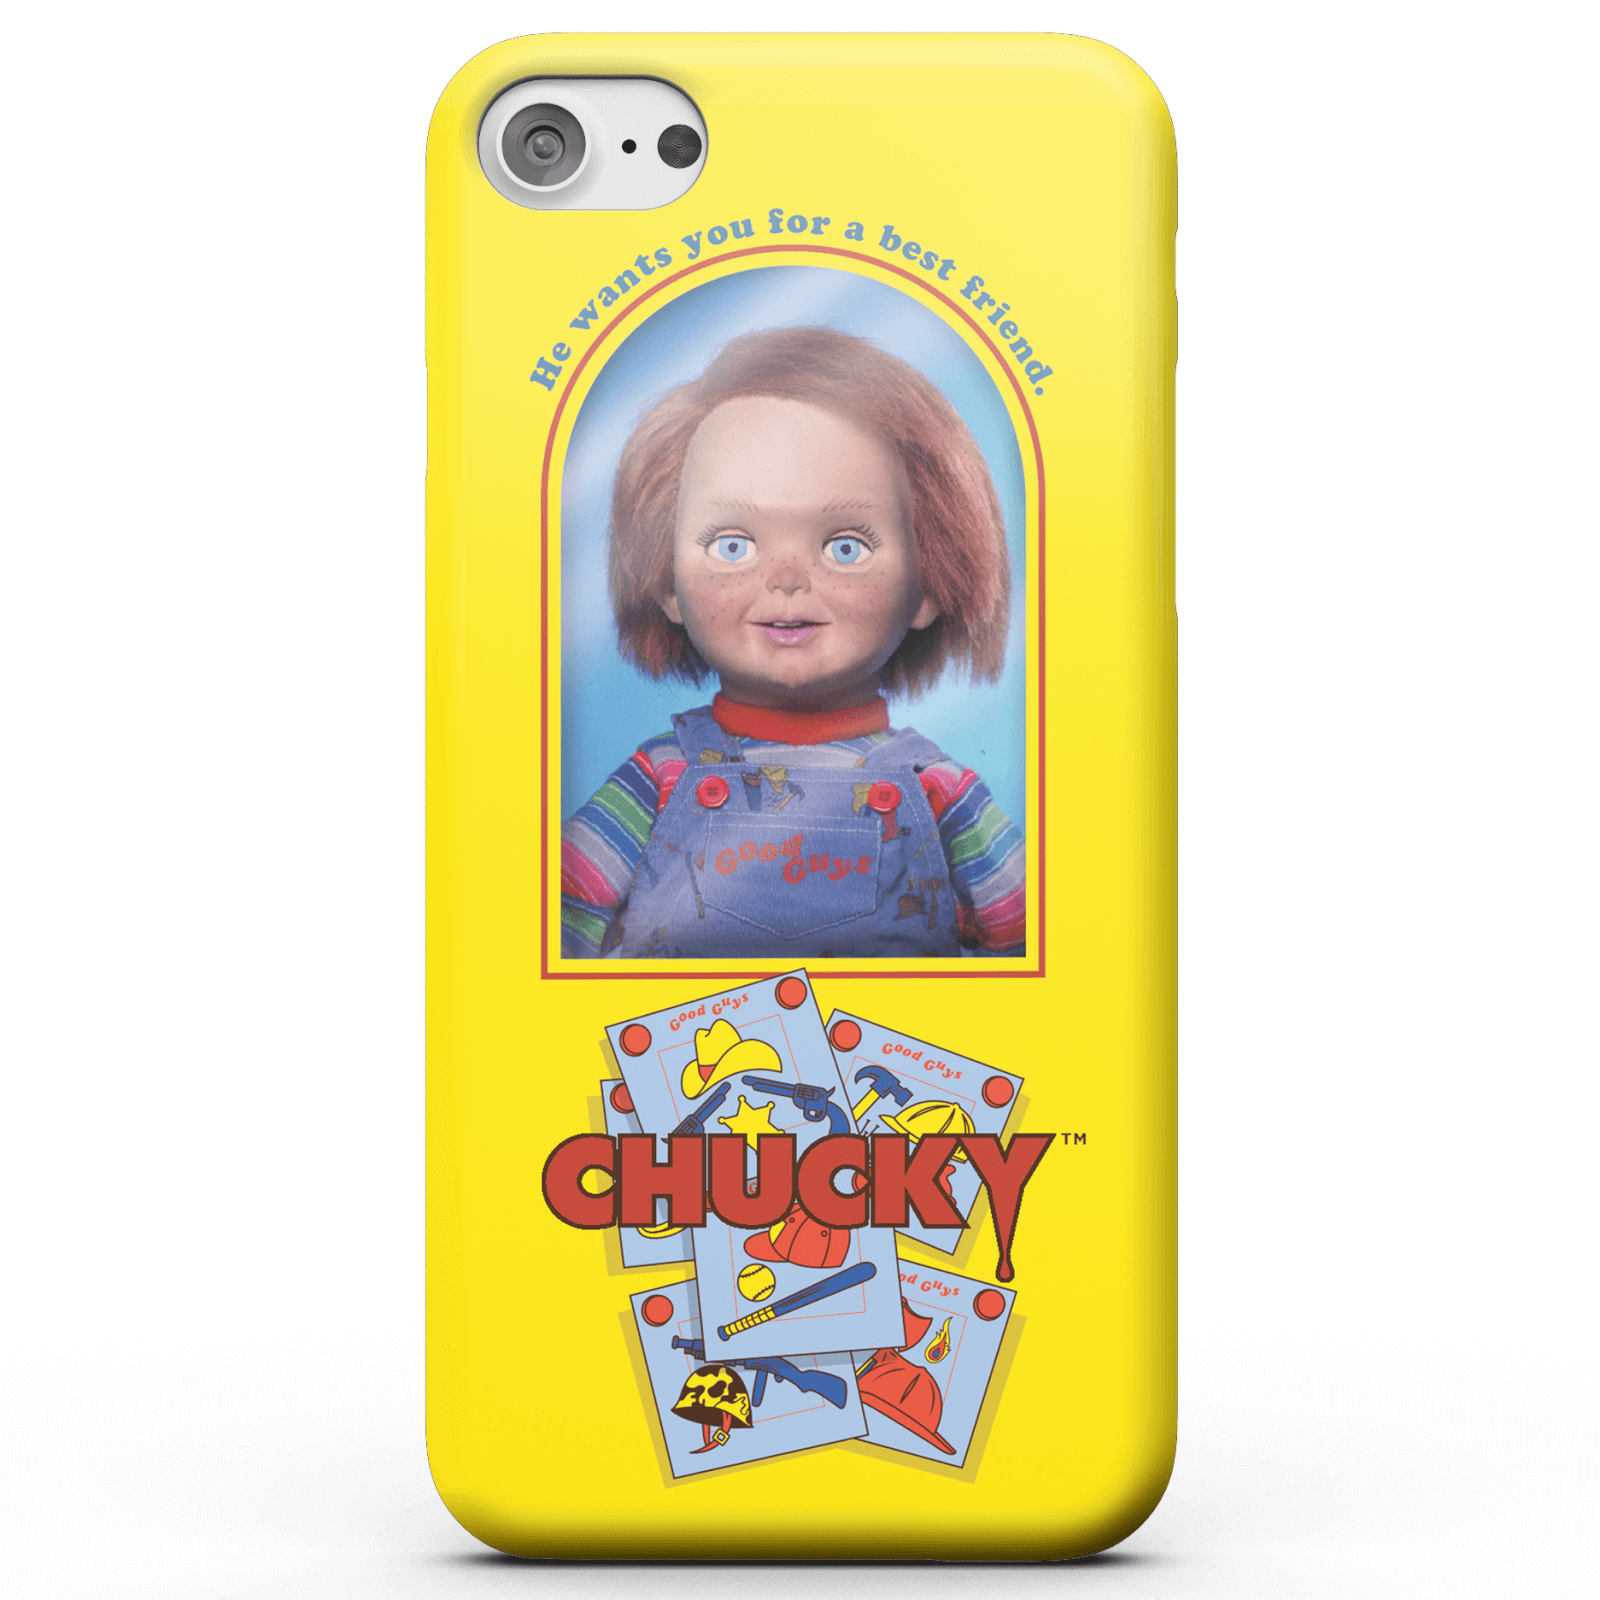 Chucky Good Guys Doll Smartphone Hülle für iPhone und Android - iPhone 5/5s - Tough Hülle Glänzend von Chucky